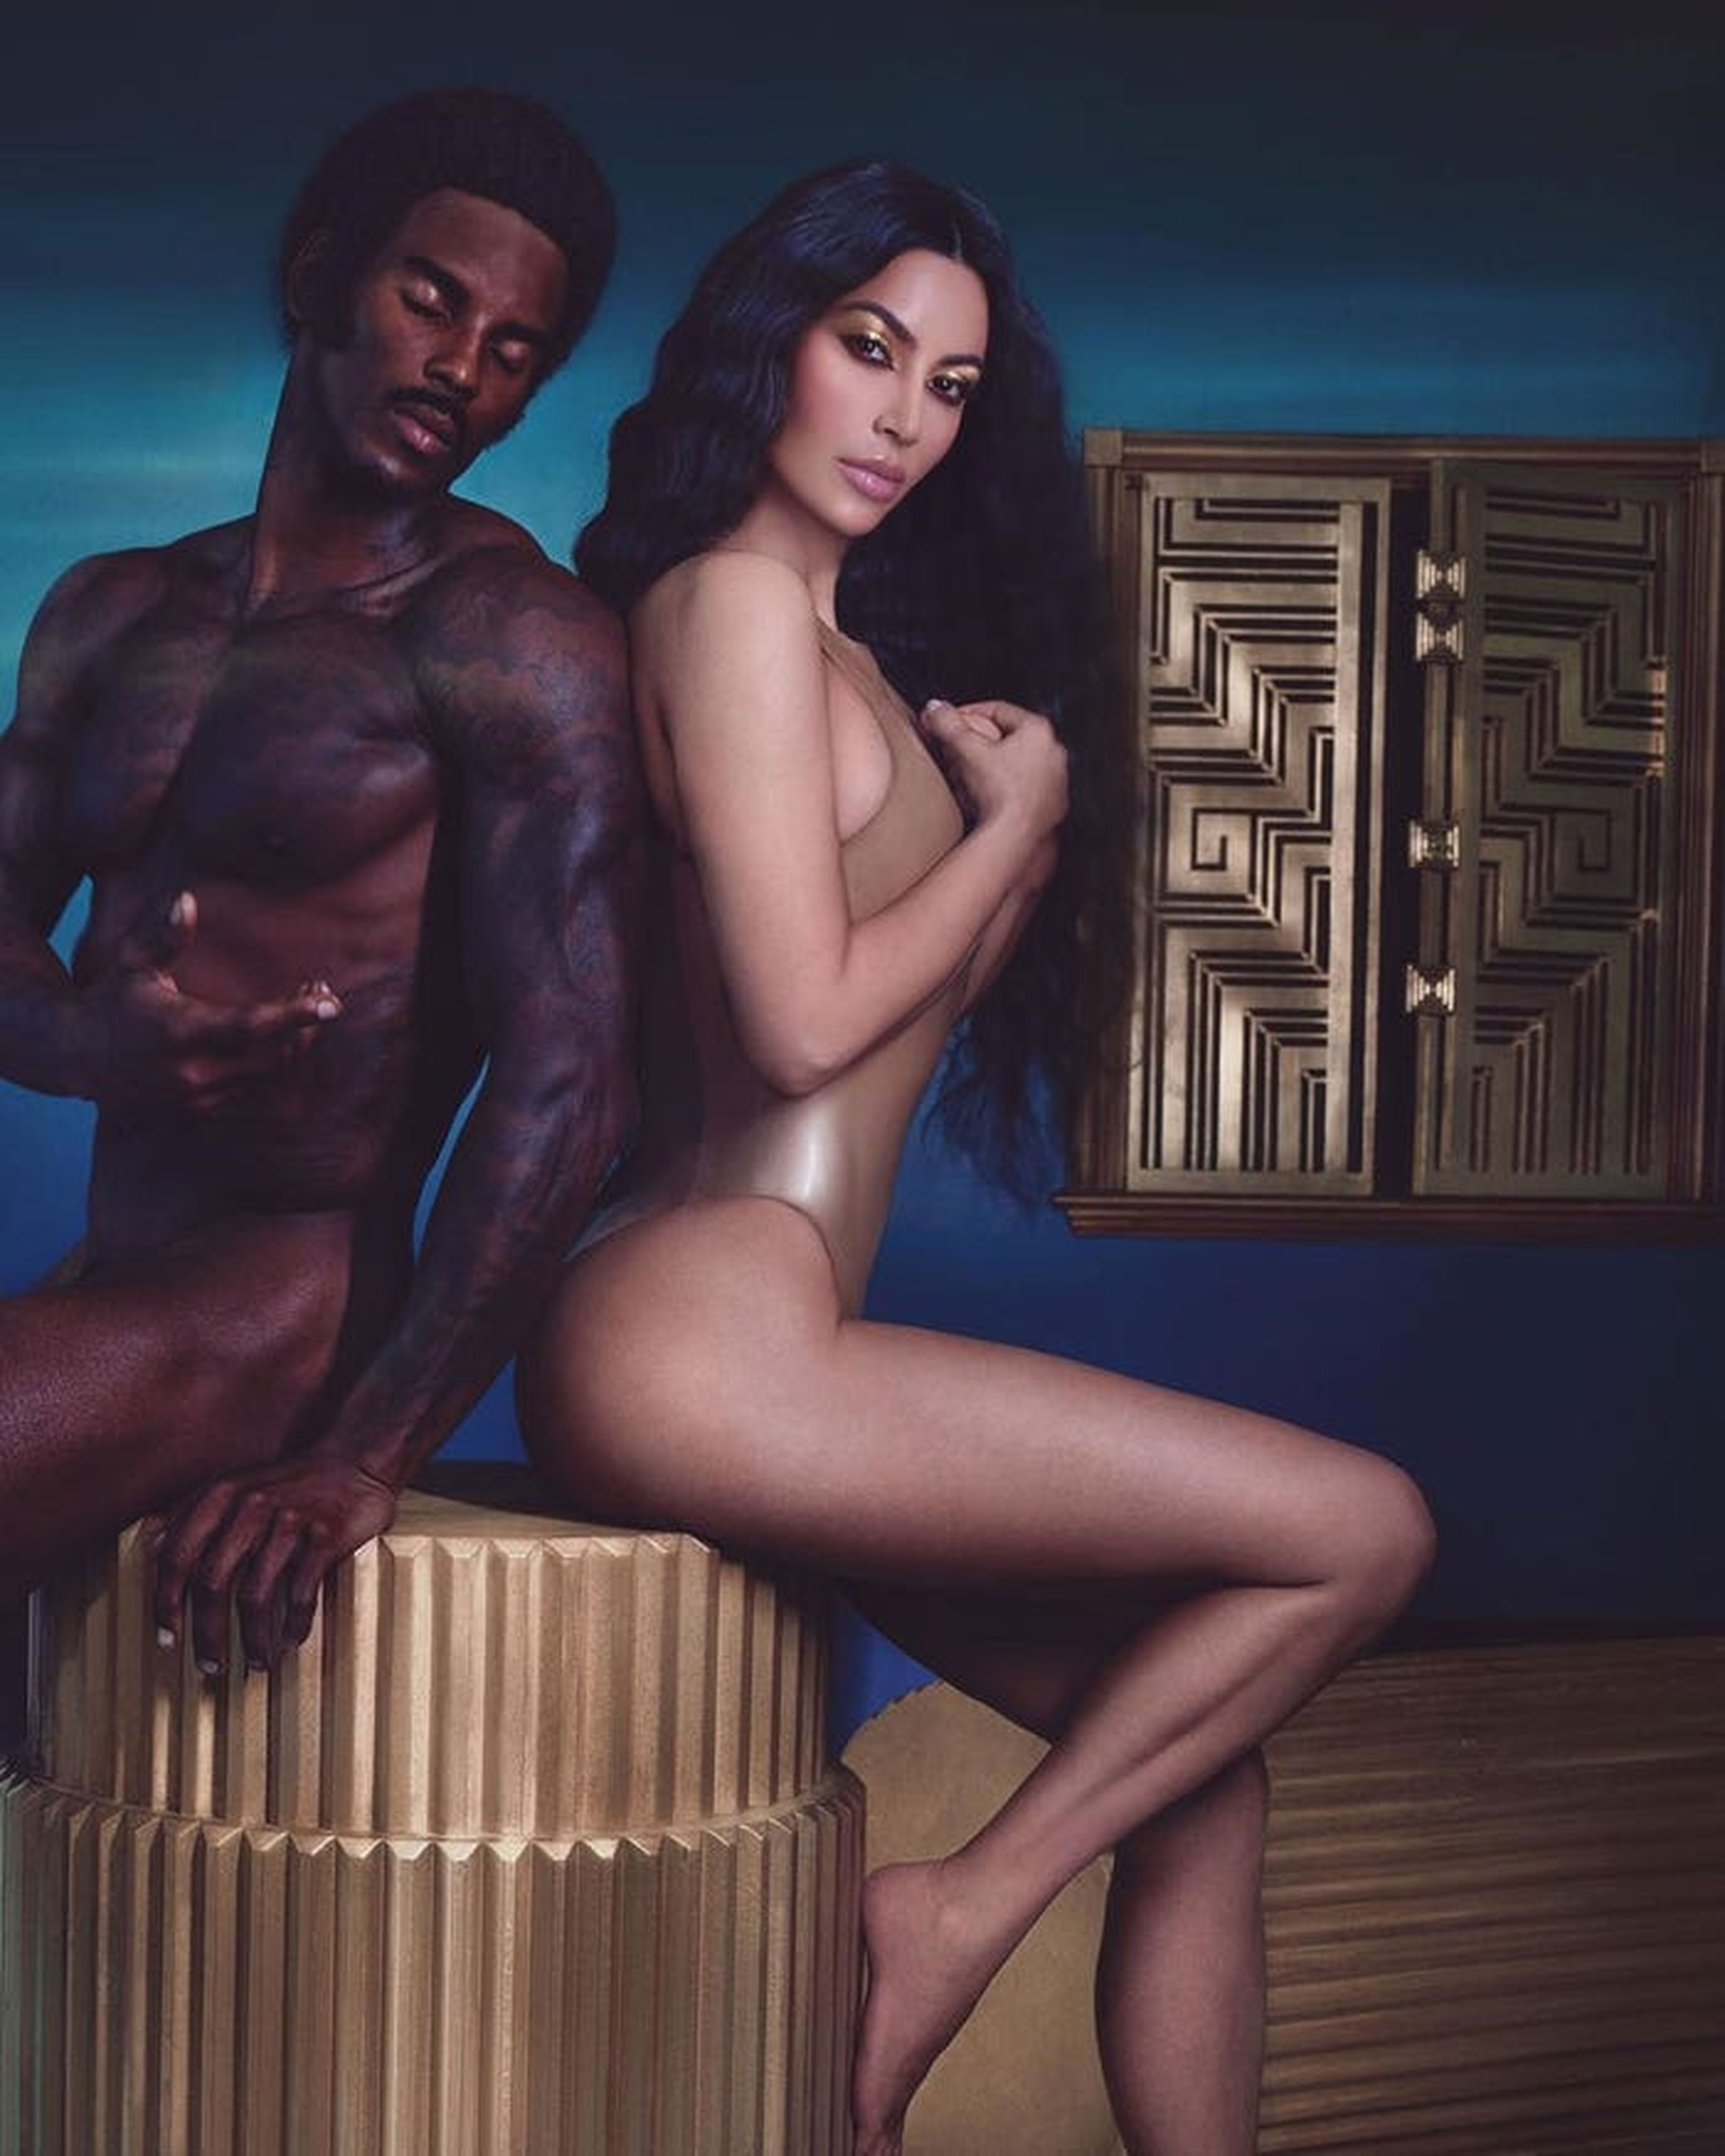 51. En octubre de 2018, Kim Kardashian West publicó una foto en Instagram anunciando su empresa de belleza.Kim Kardashian West en un anuncio de su colección de belleza 'Flashing Lights'.